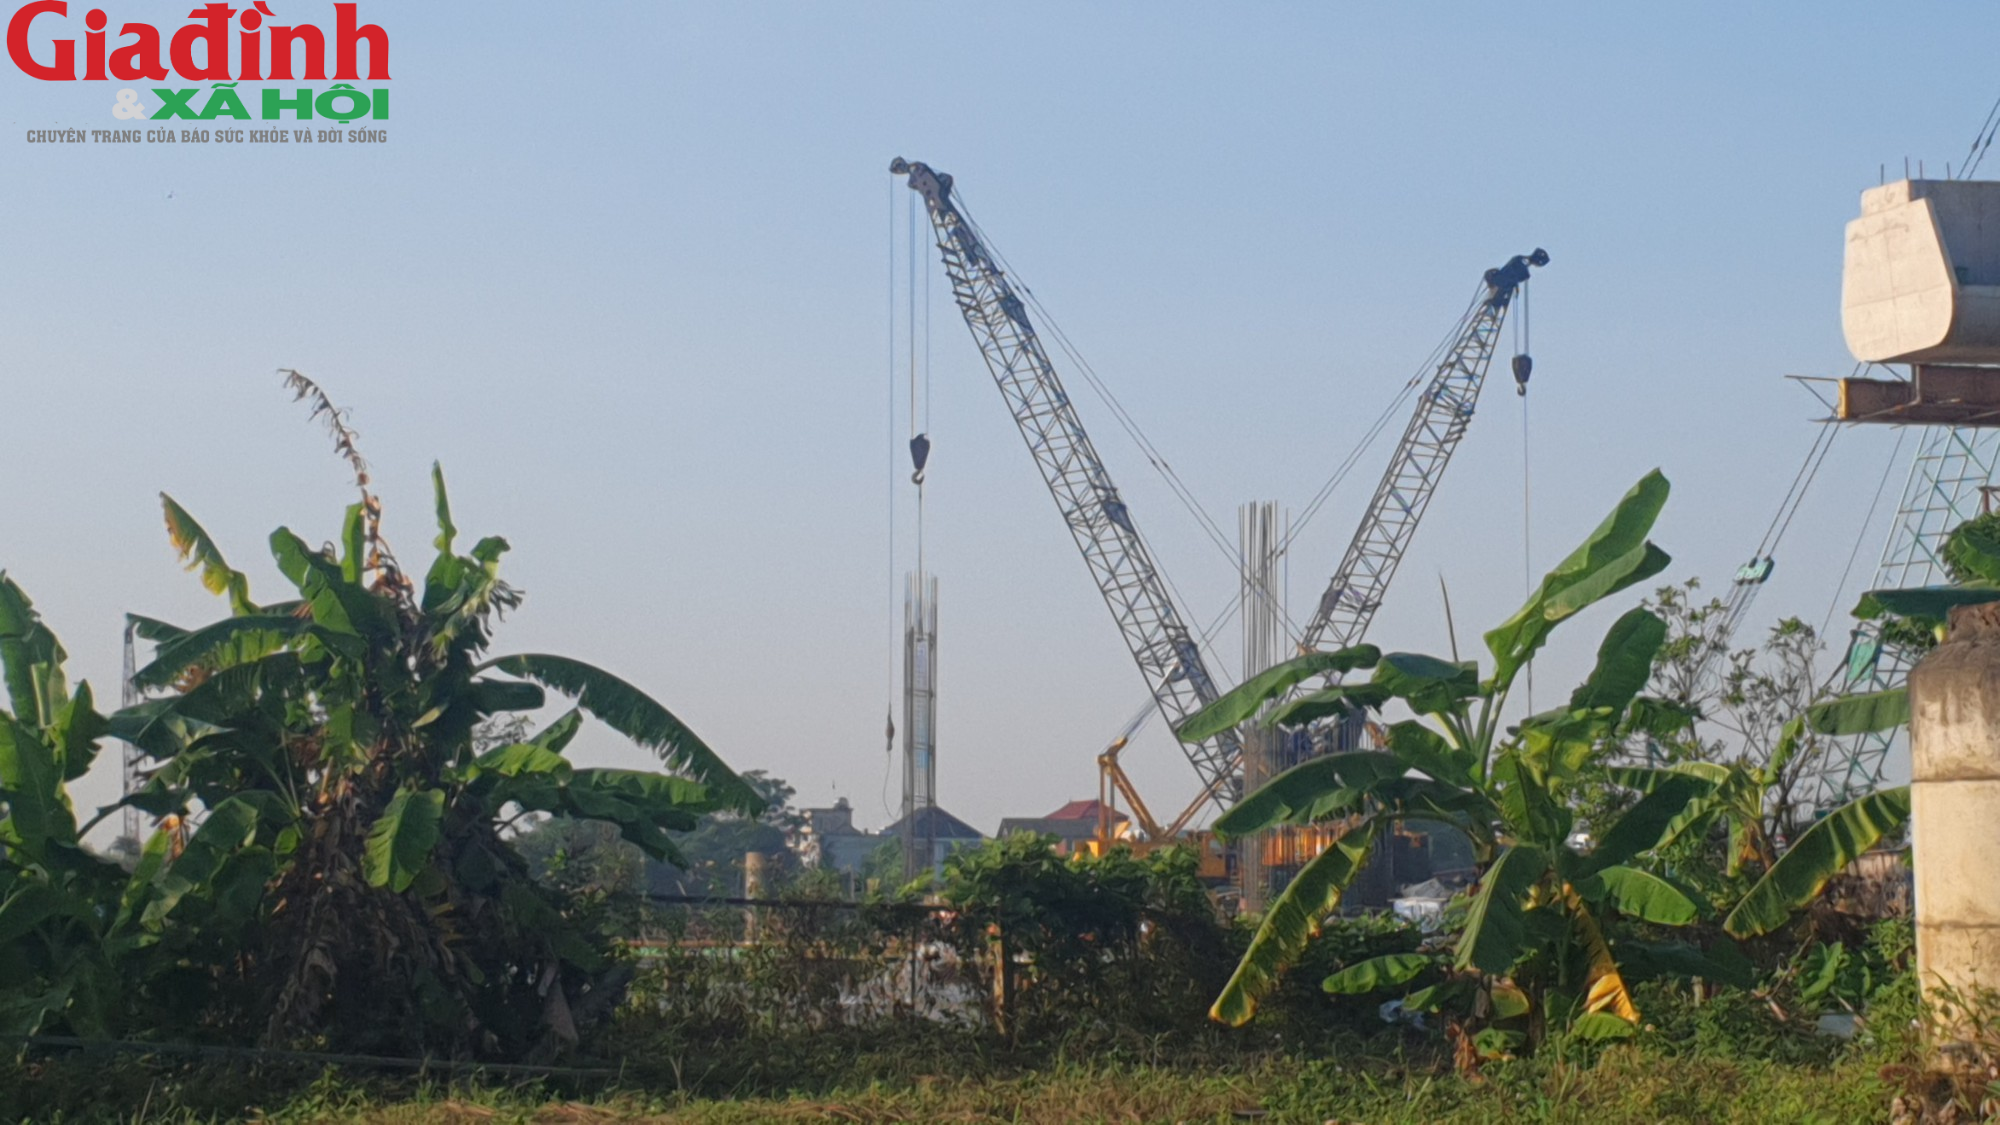 Cận cảnh đại công trình xây dựng cầu Đồng Cao (Nam Định) giữa sông lớn - Ảnh 13.